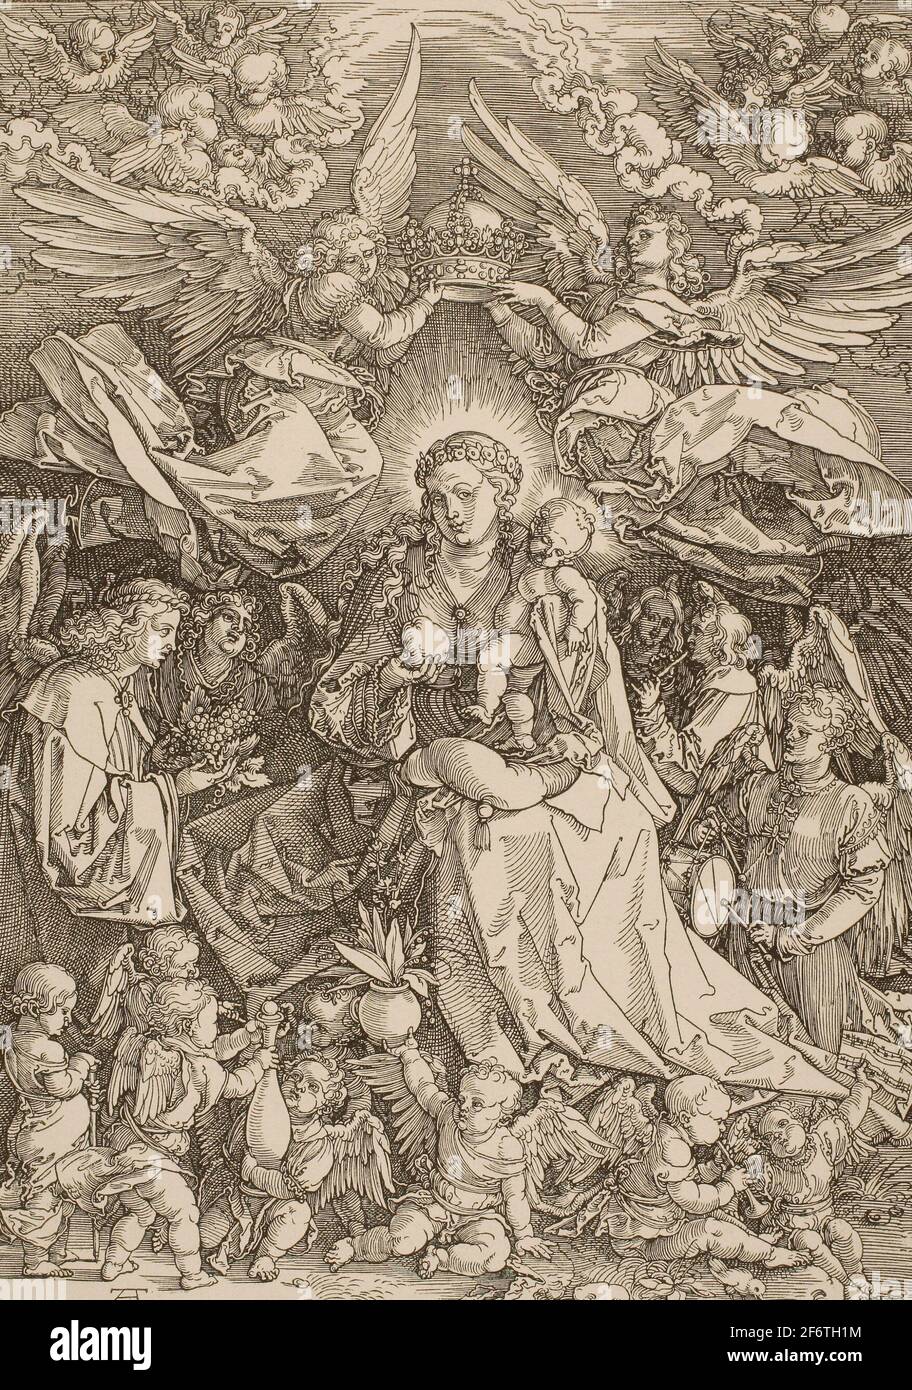 Autor: Albrecht Drer. Madonna Königin der Engel - 1518 - Albrecht Drer Deutsch, 1471-1528. Holzschnitt in schwarz auf elfenbeinfarbenem Papier. Deutschland. Stockfoto